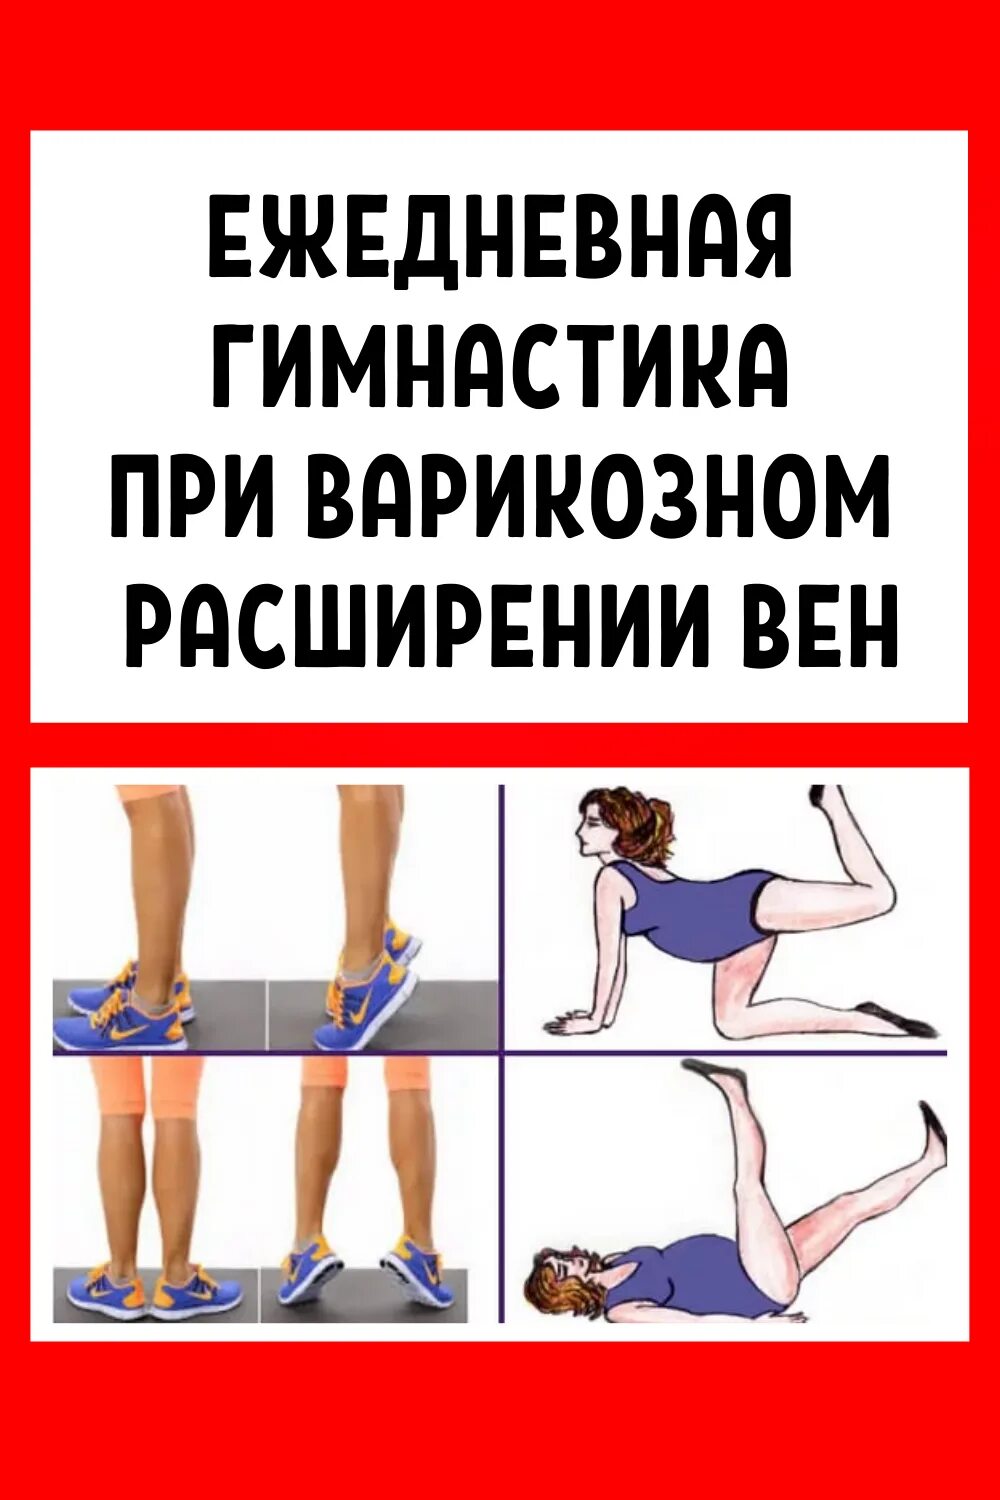 Упражнения притварикозе. Упражнения от варикоза на ногах. Упражнения при варикозе нижних конечностей.